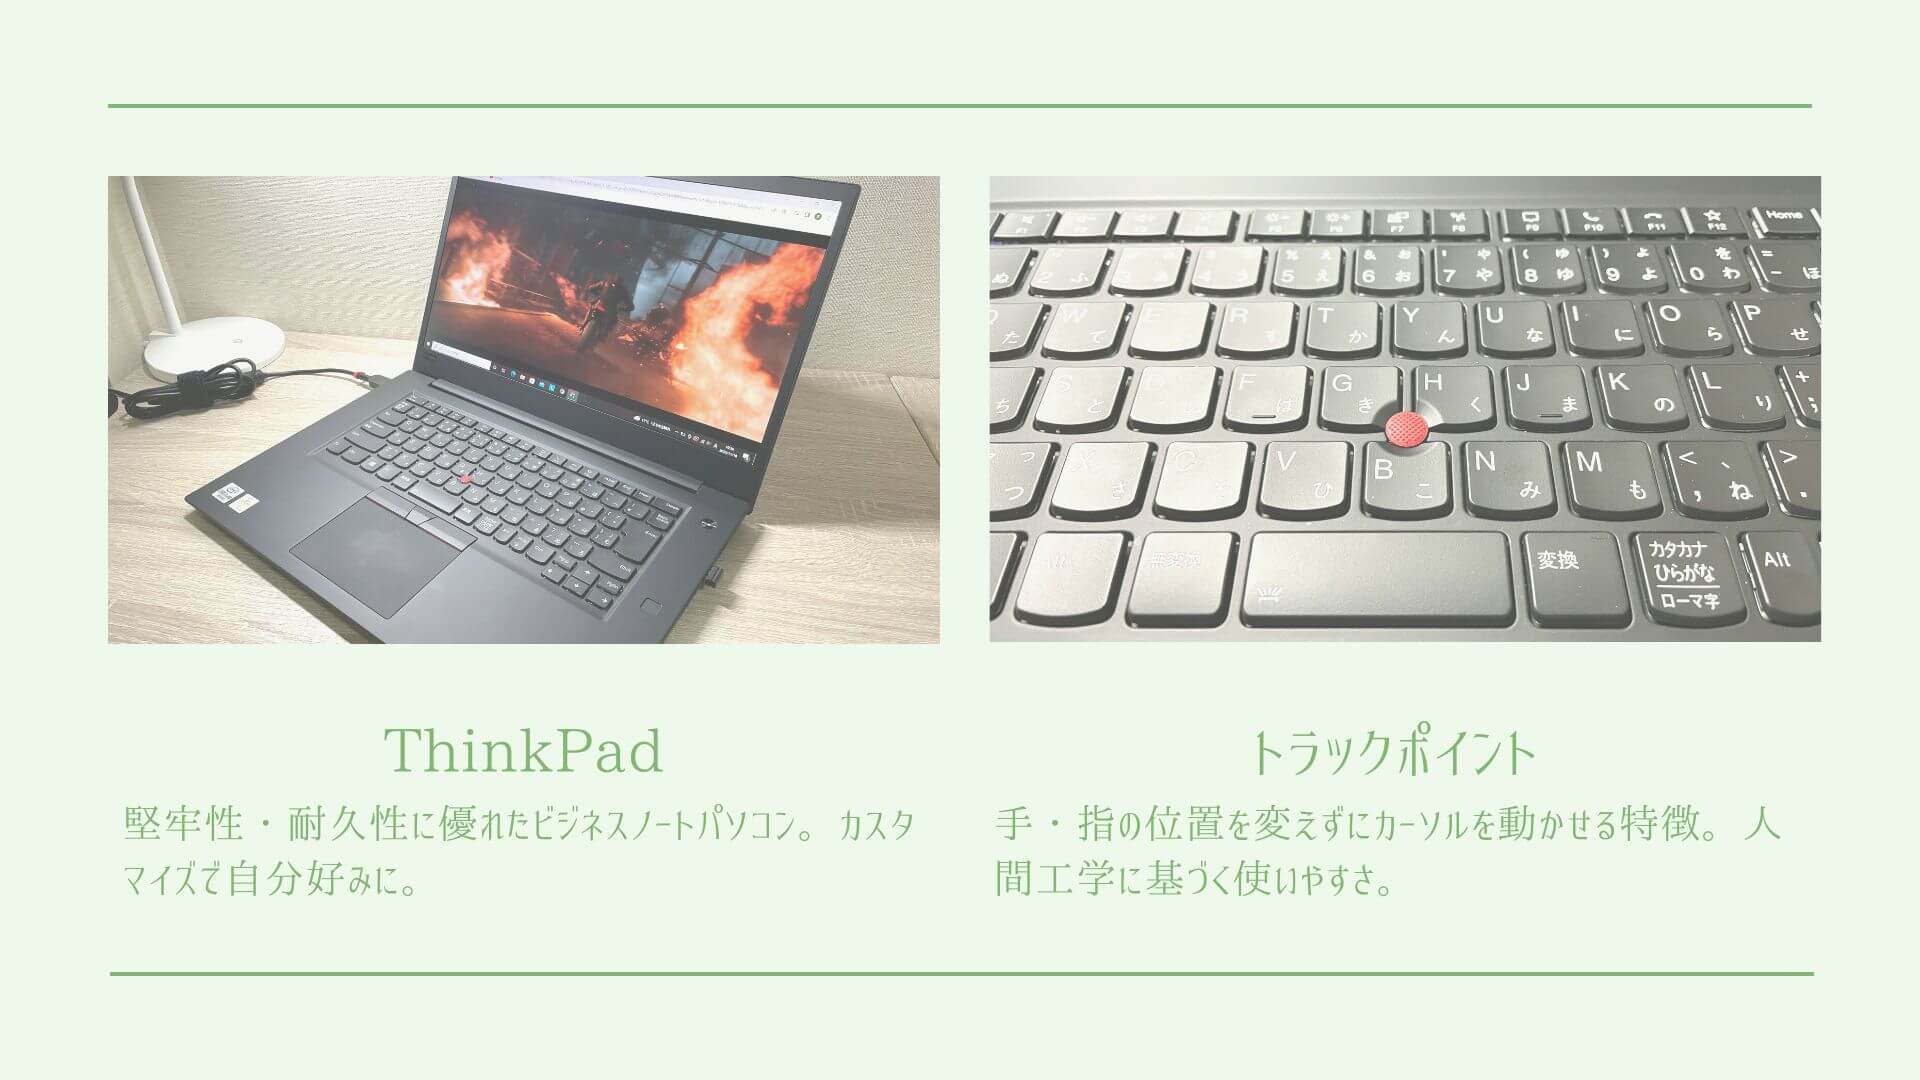 レノボ「ThinkPad」国内米沢生産をカスタマイズするのもおすすめ 